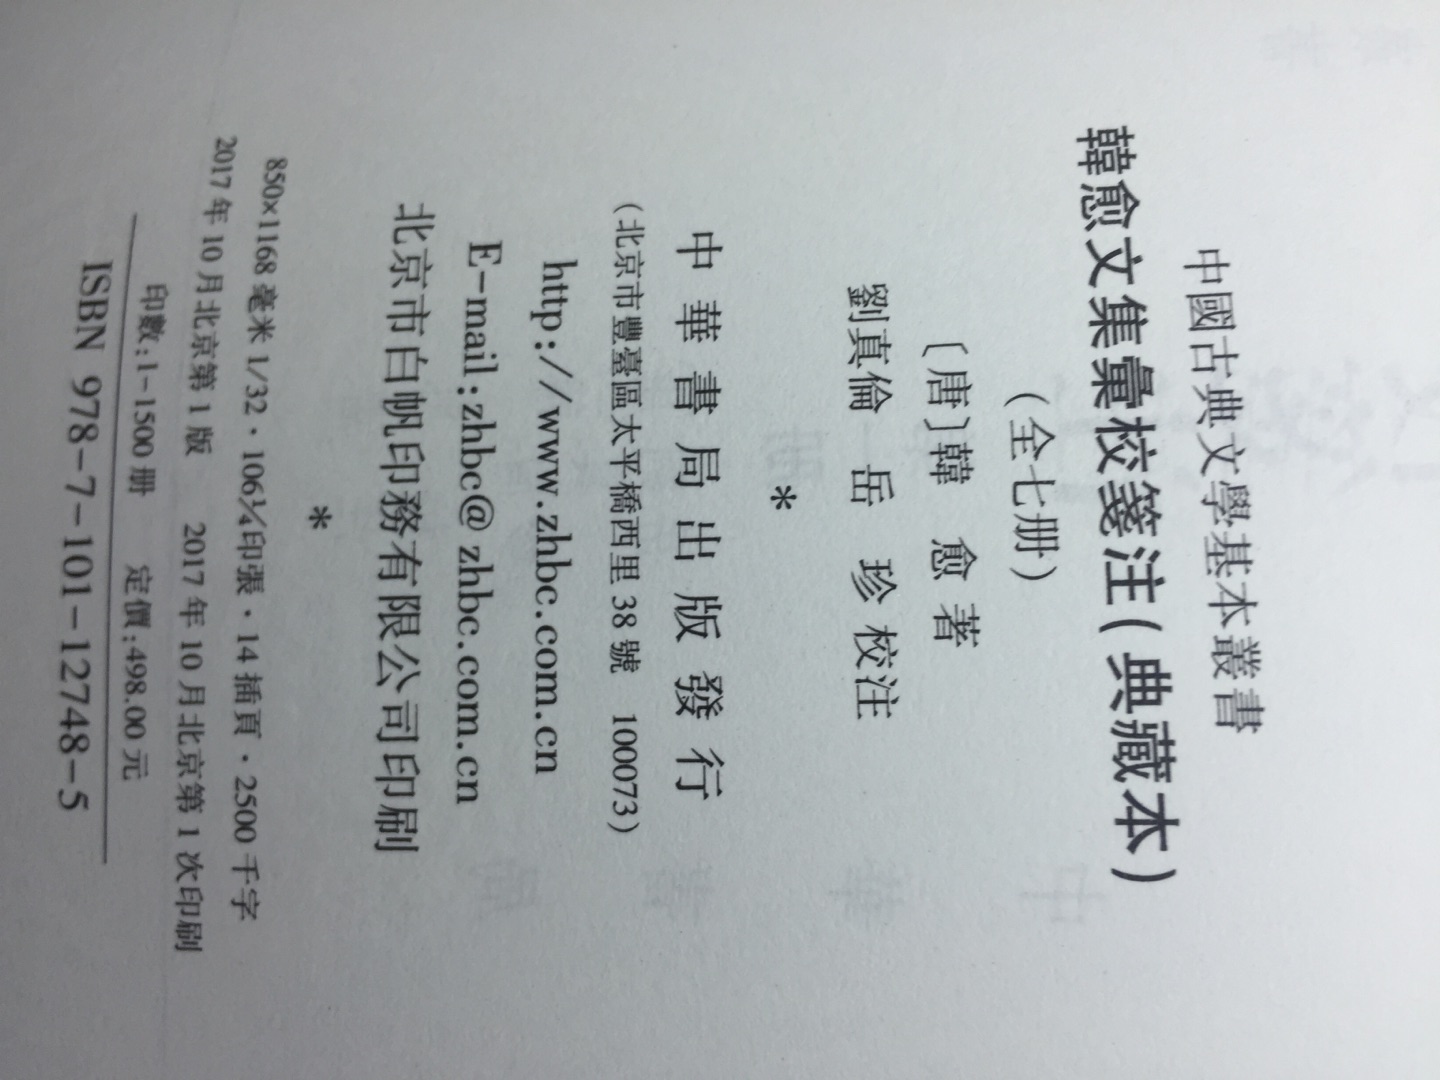 中华书局新出的《韩愈文集汇校笺注》典藏本到货了，还是原来的味道，但装订好像有点问题，不如李白那套紧凑，希望二印时好一些。